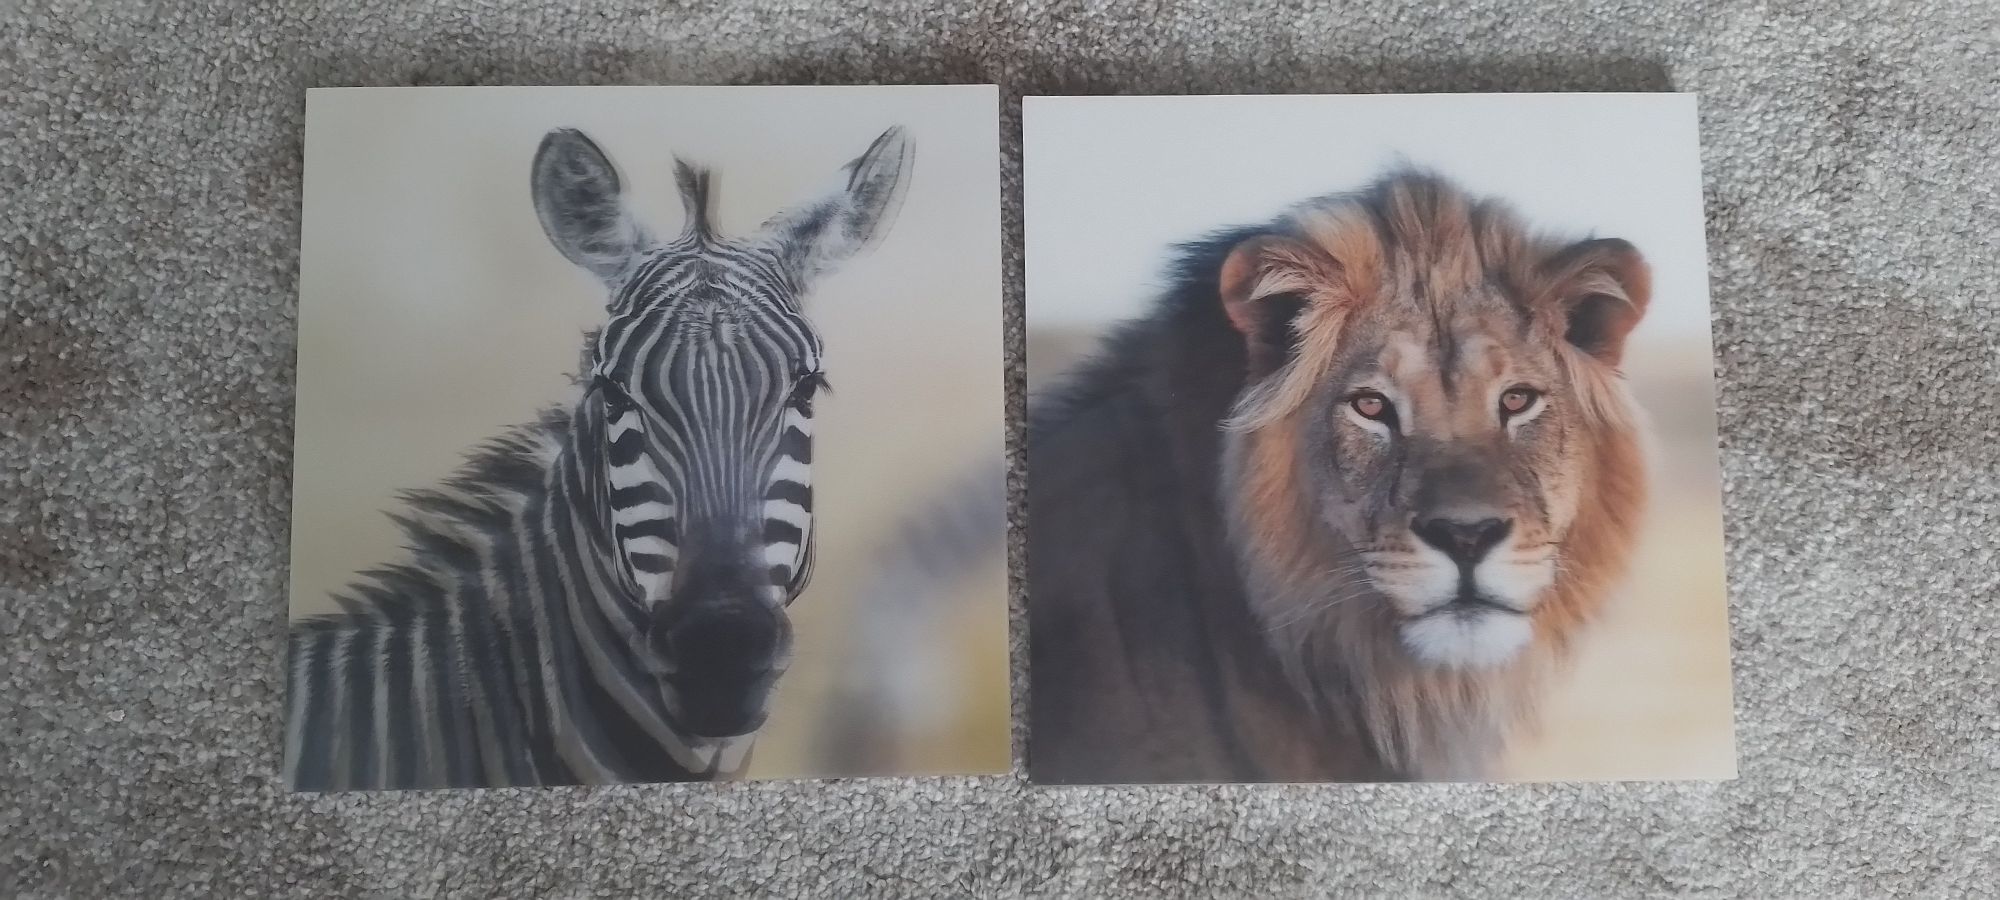 Obrazy obrazki trójwymiarowe 3D lew i zebra